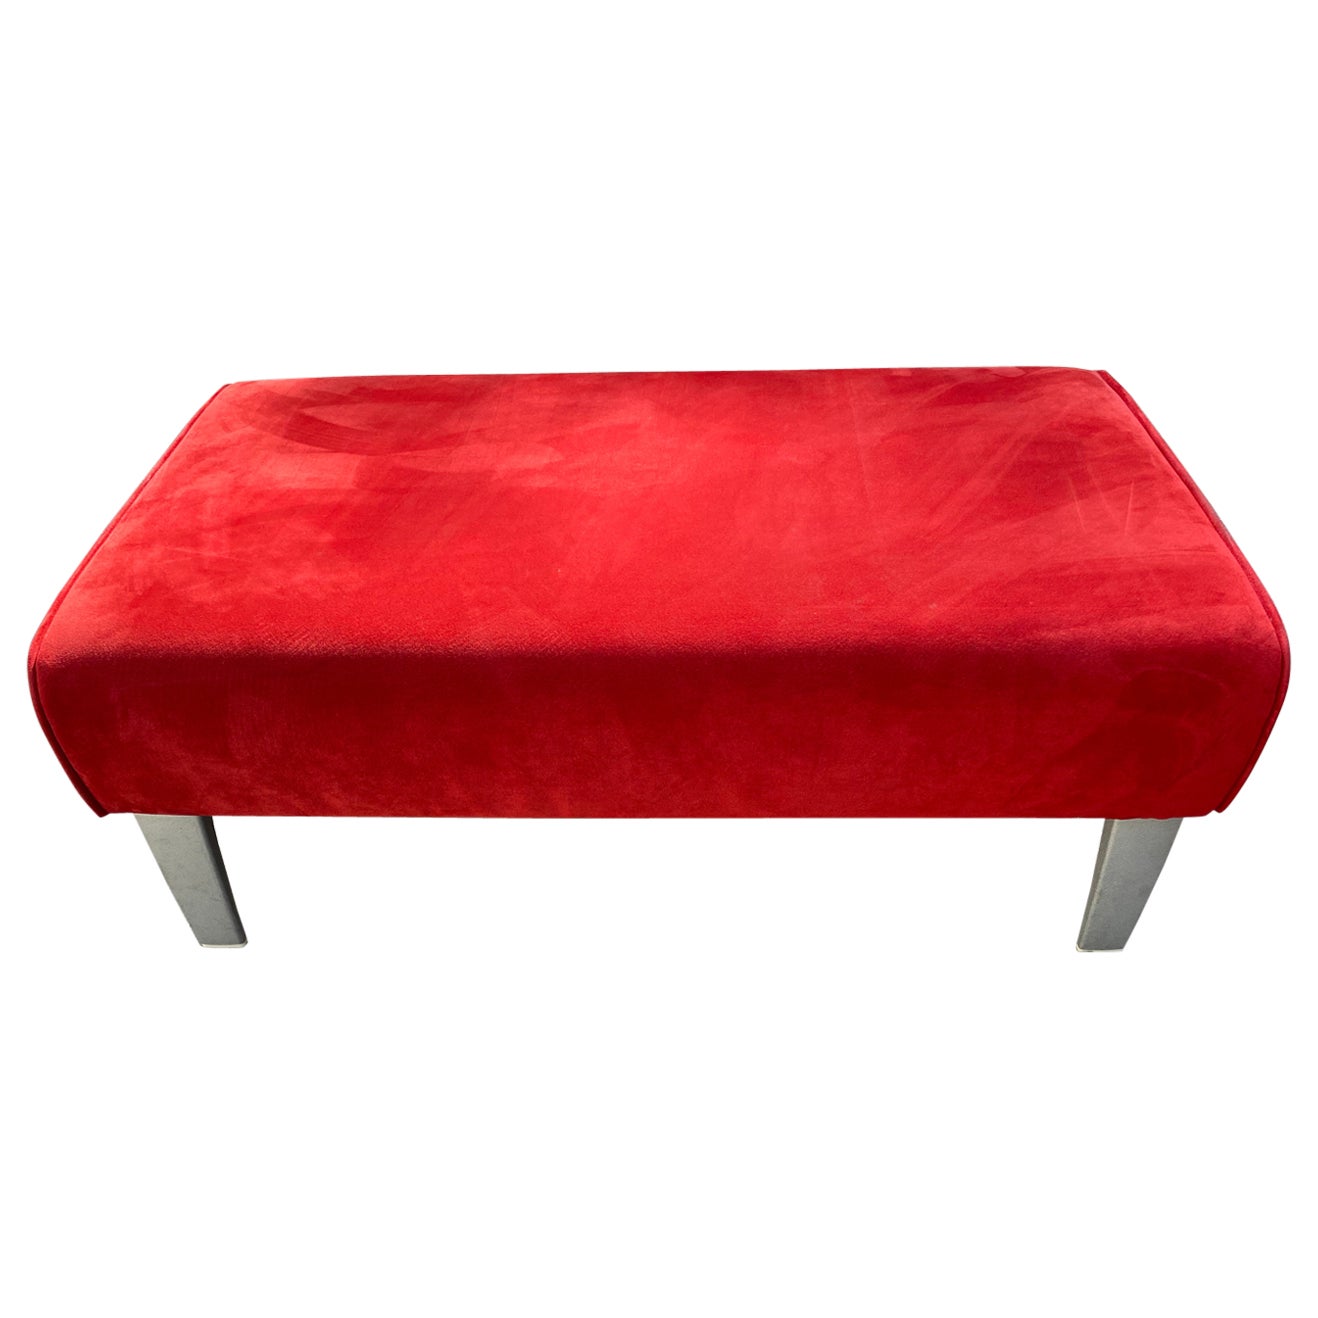 Bench Footrest Alcantara Red, 2000 For Sale